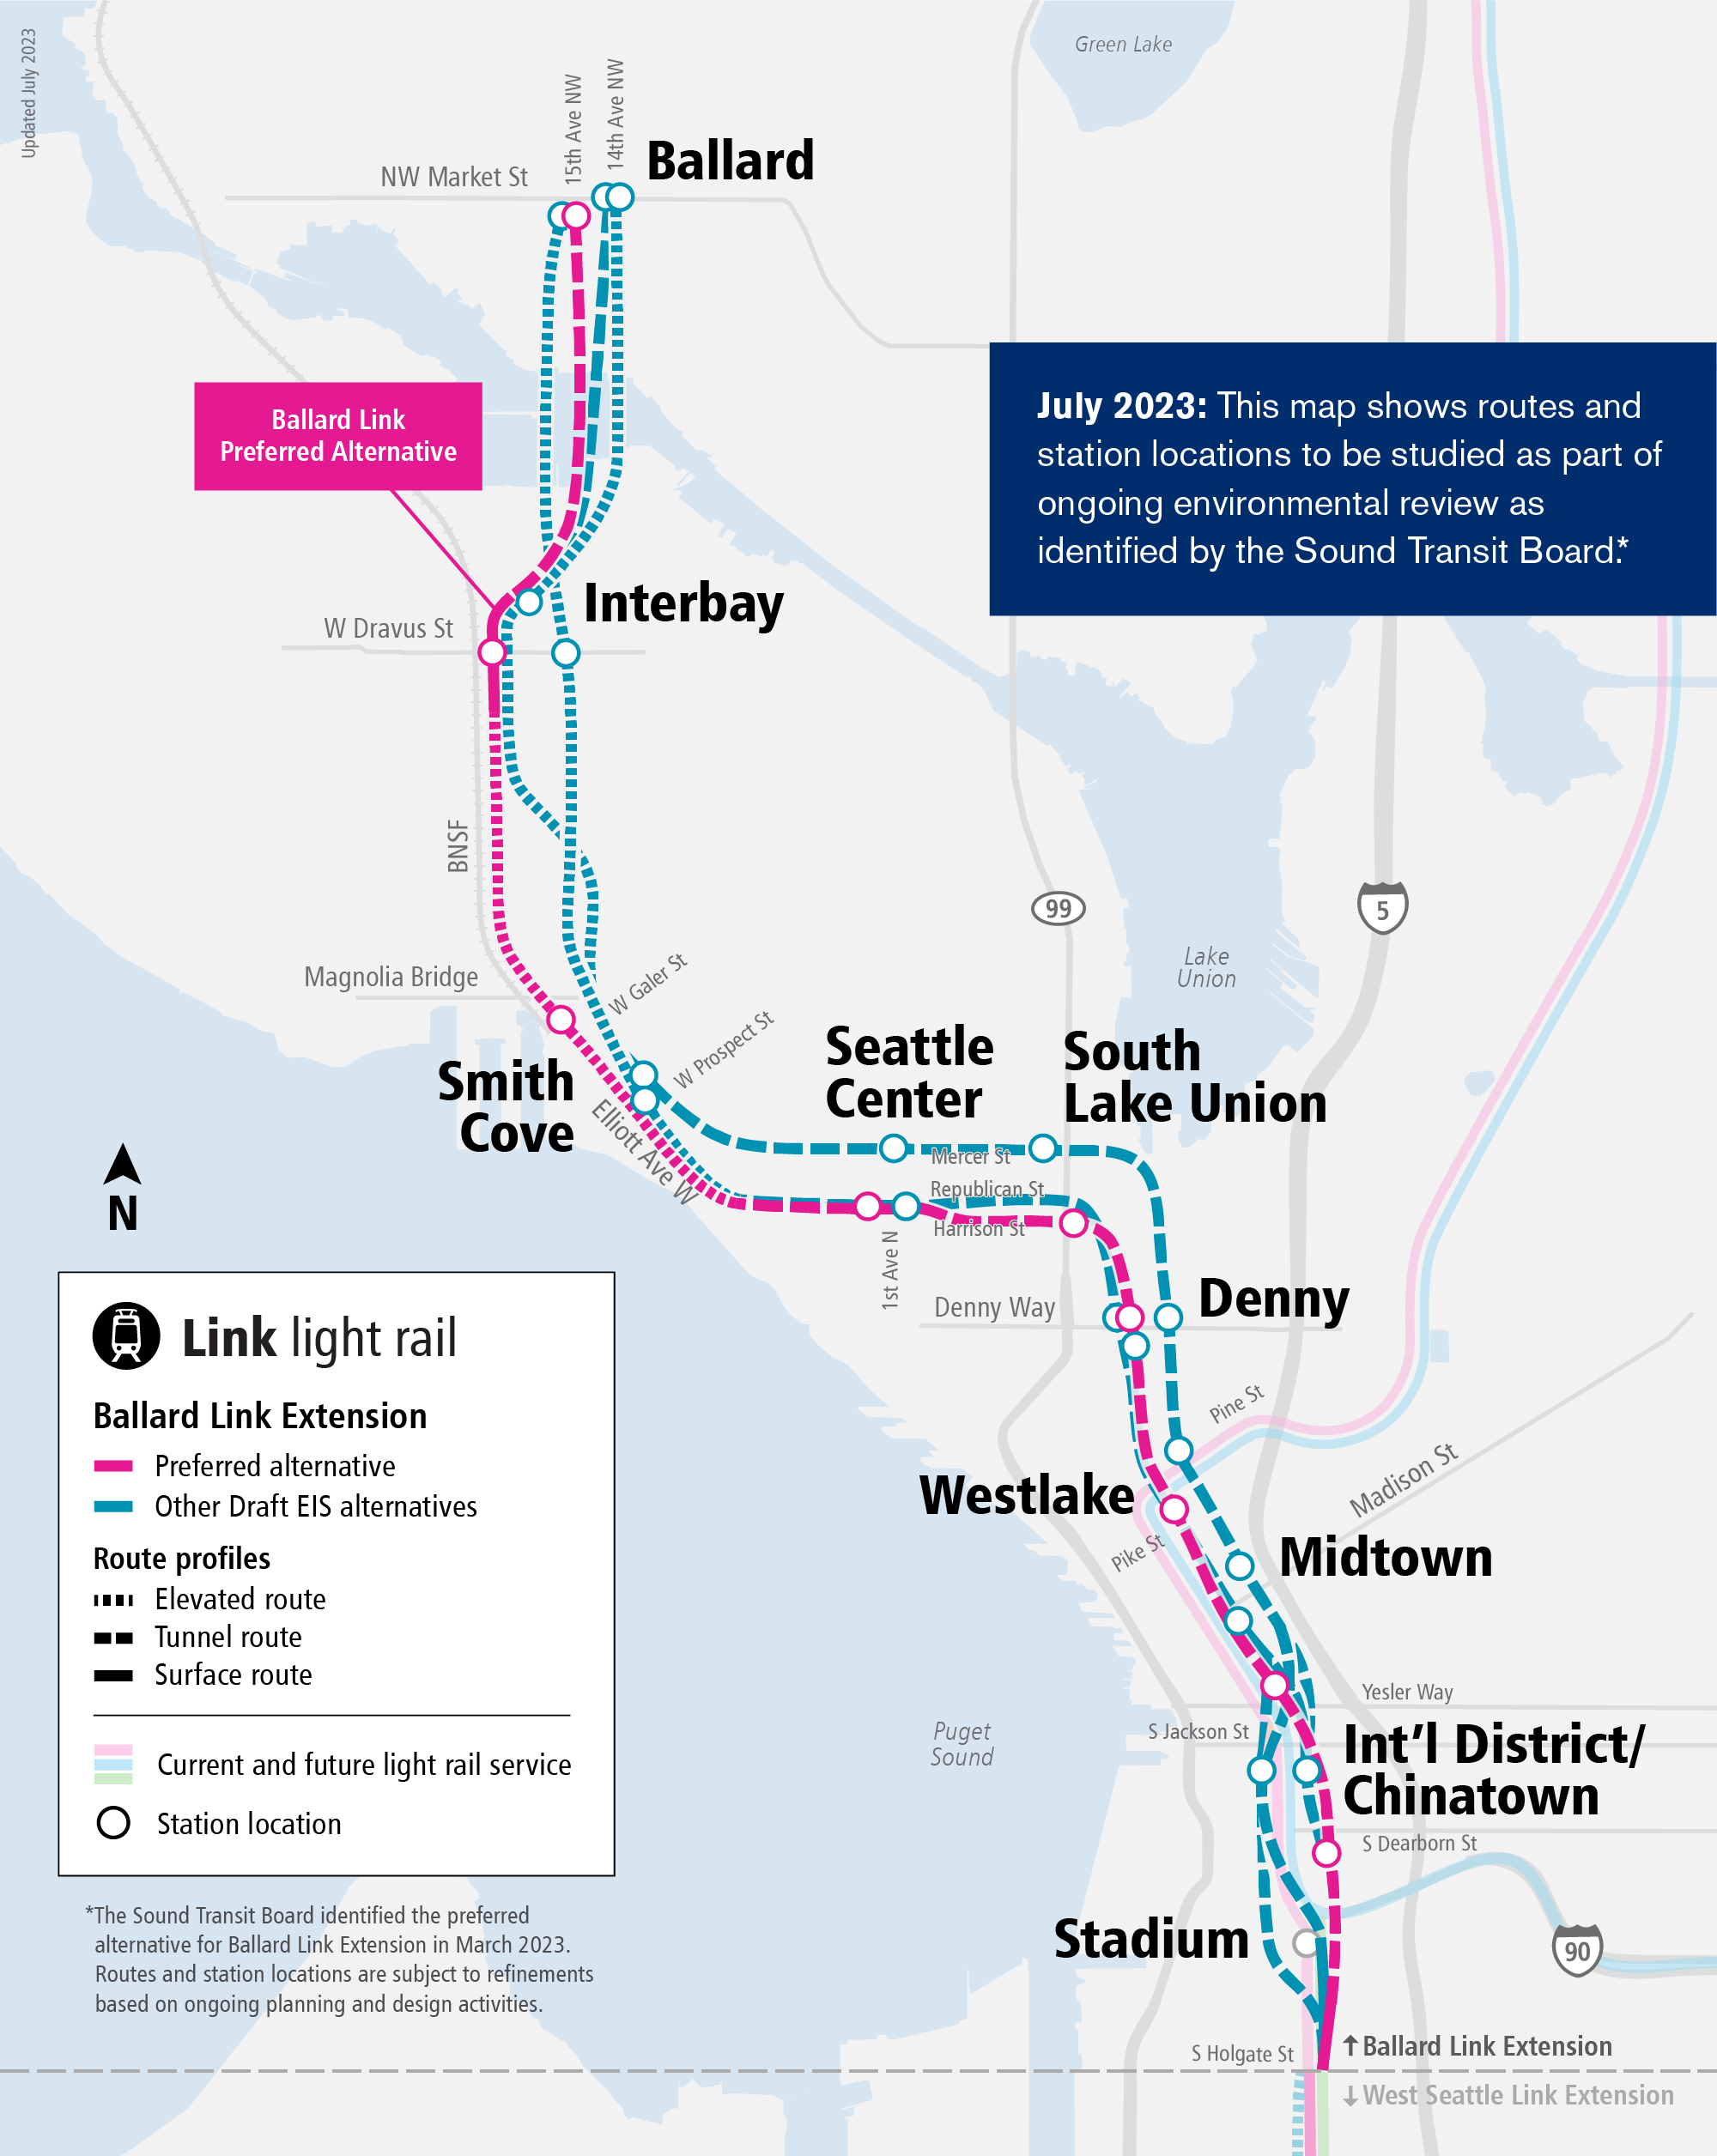 Ballard Link Extension Map